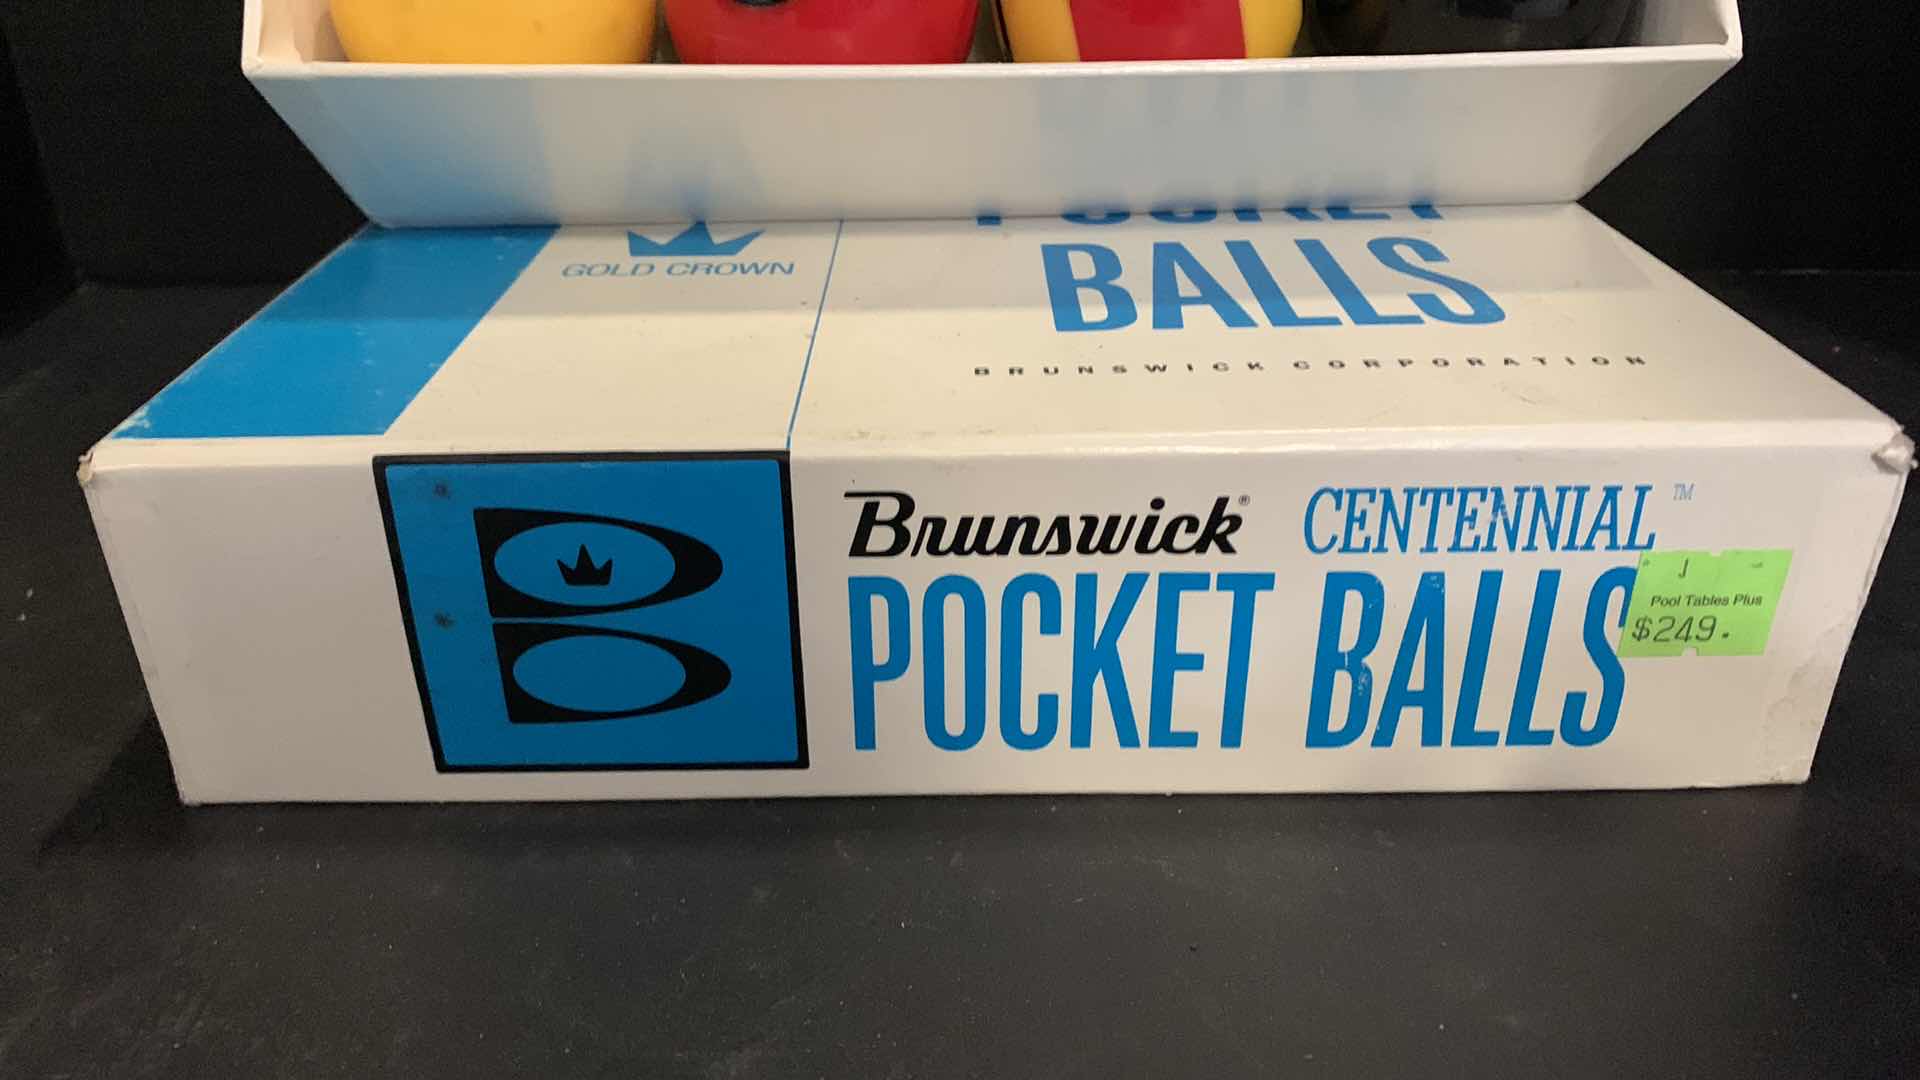 Photo 5 of BRUNSWICH CENTENNIAL POCKET BALLS $249